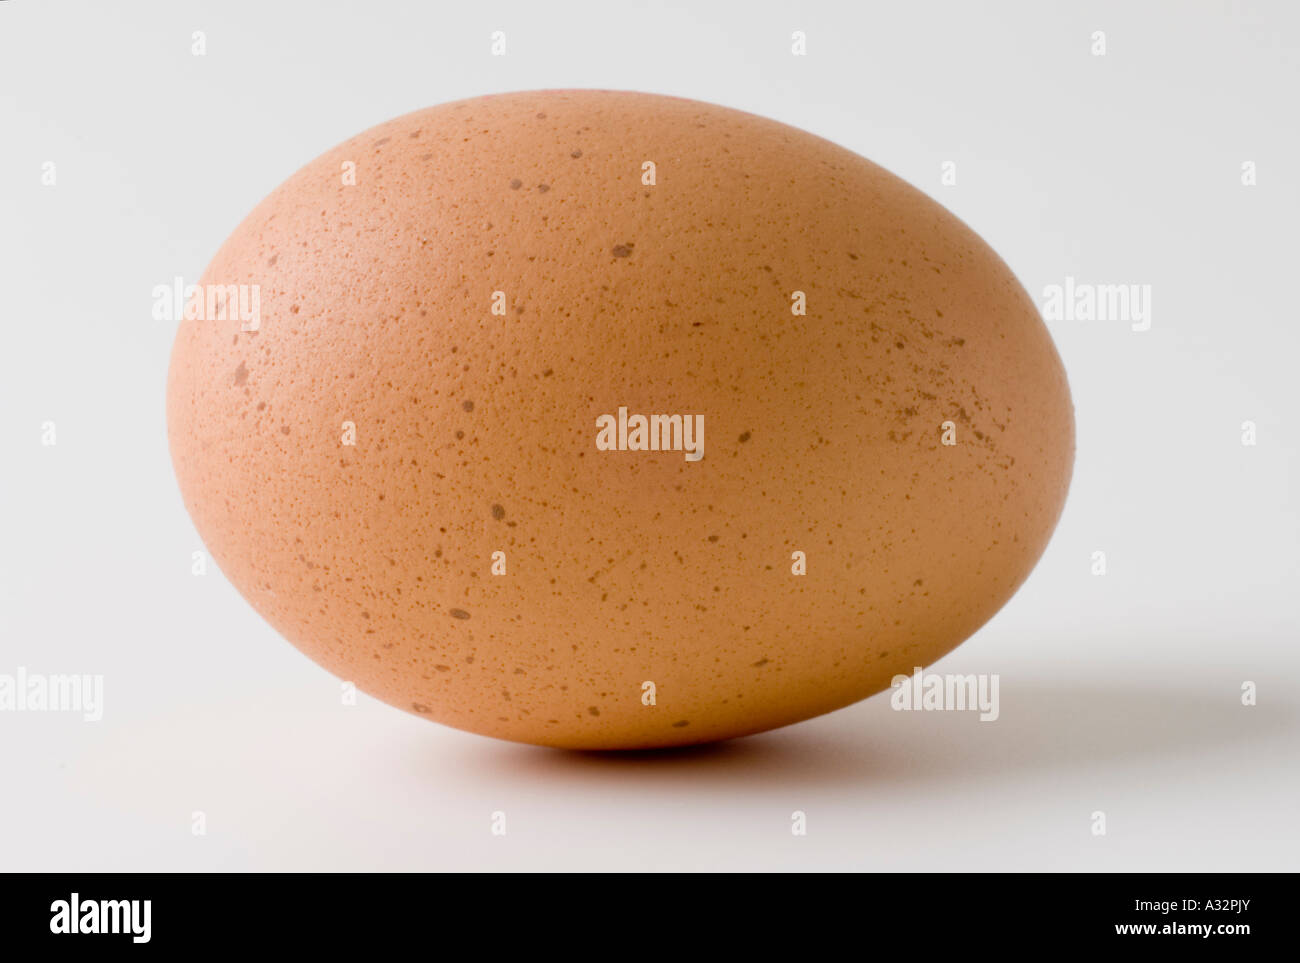 Free Range Egg on White Back ground Stock Photo